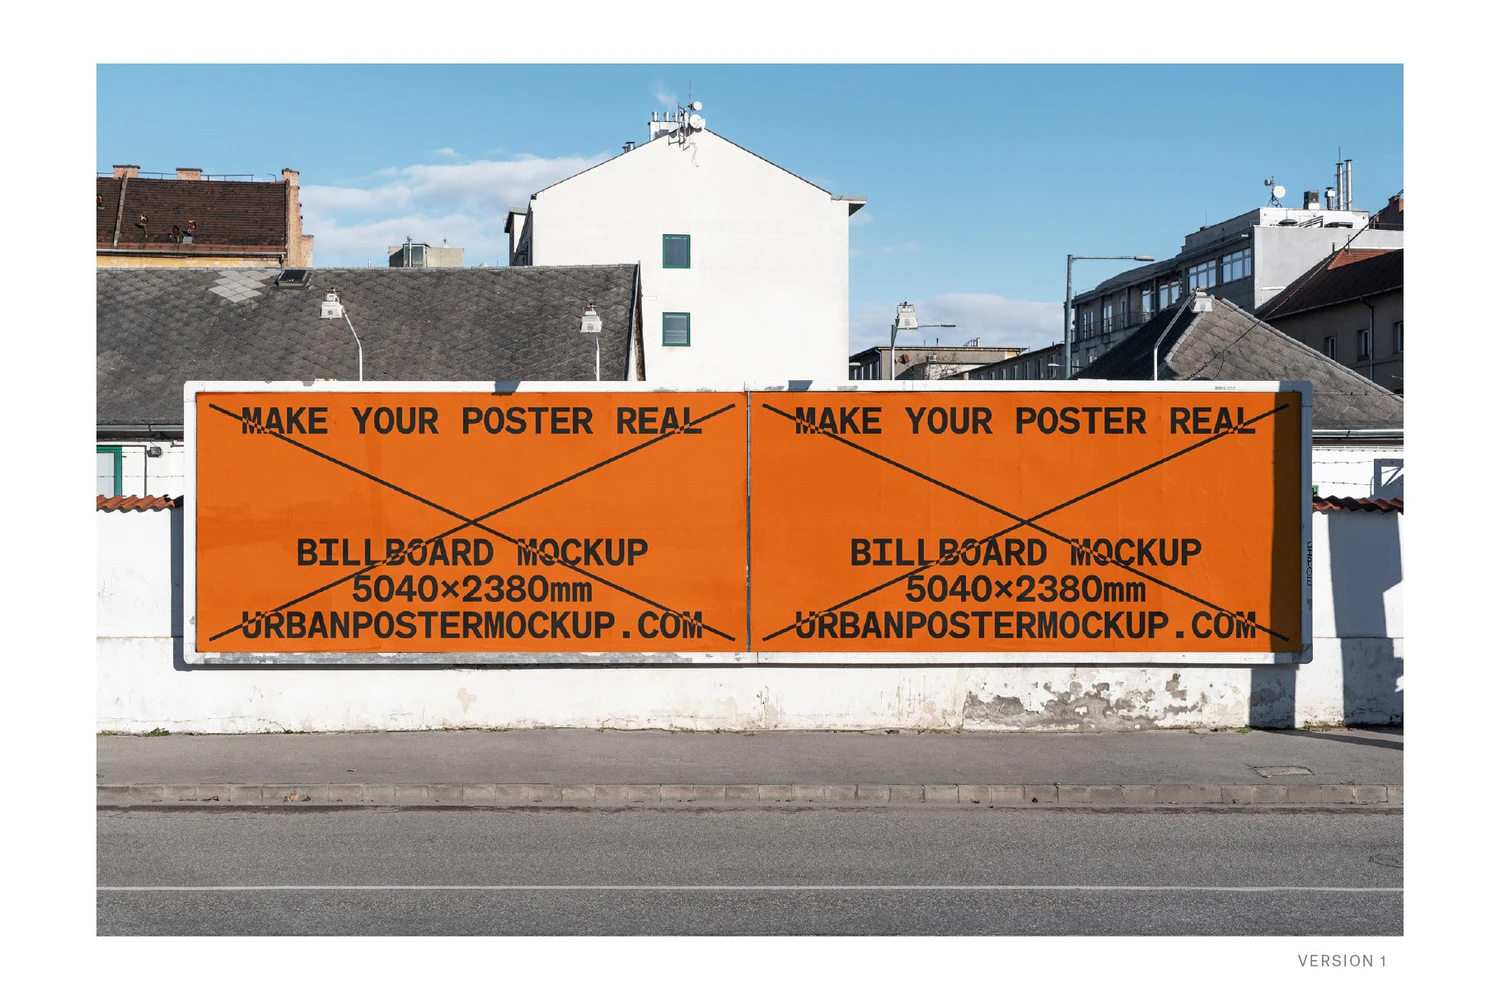 3490 20款户外车站地铁巨幅海报广告设计贴图ps样机素材场景展示效果 Billboard Mockup VOL.3